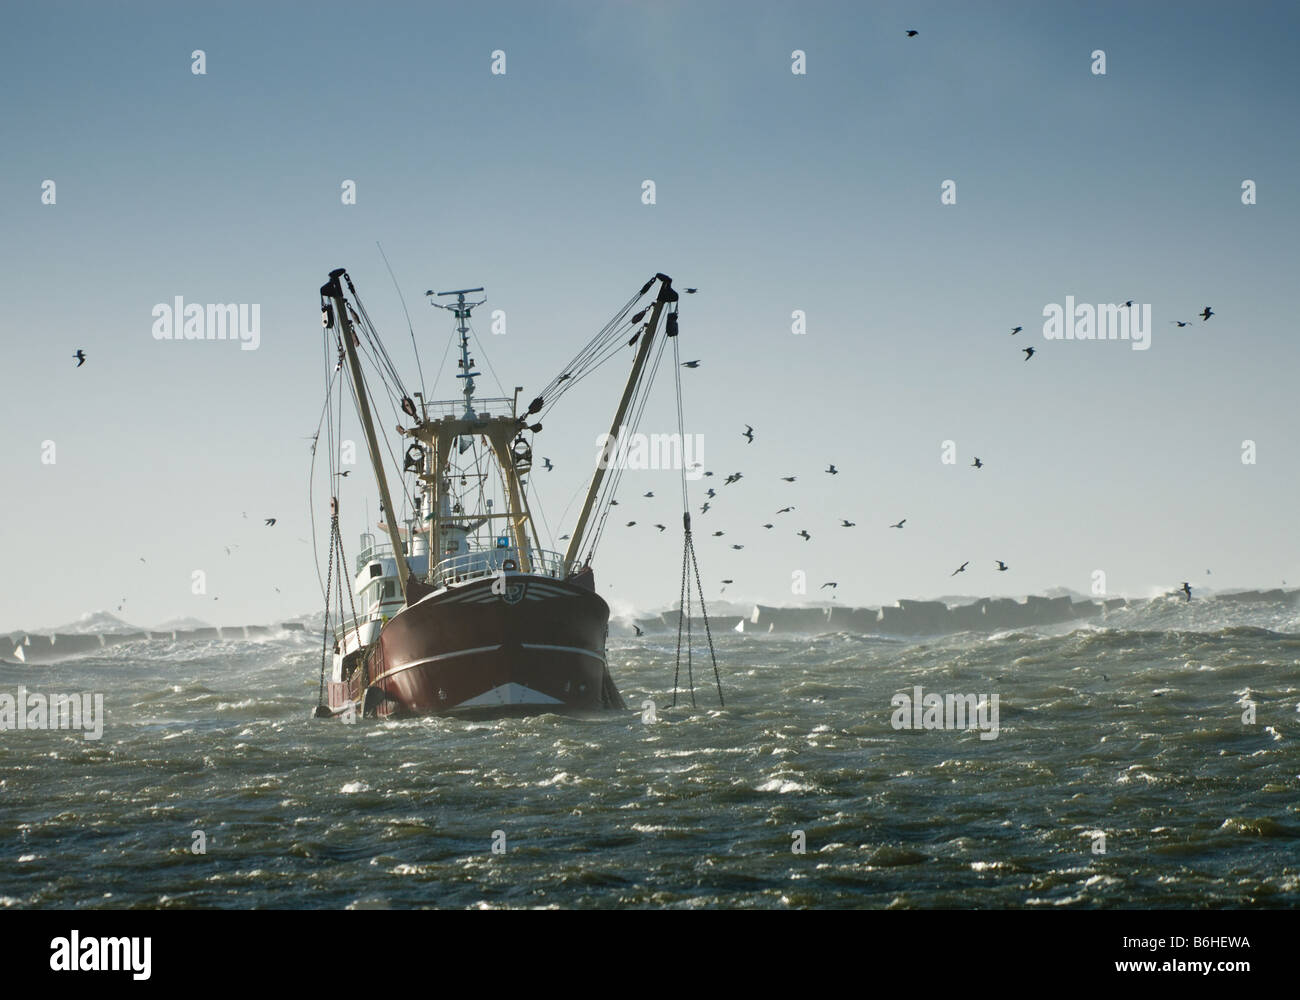 Angeln-Schiff in einem Sturm Ijmuiden Holland Niederlande Stockfoto